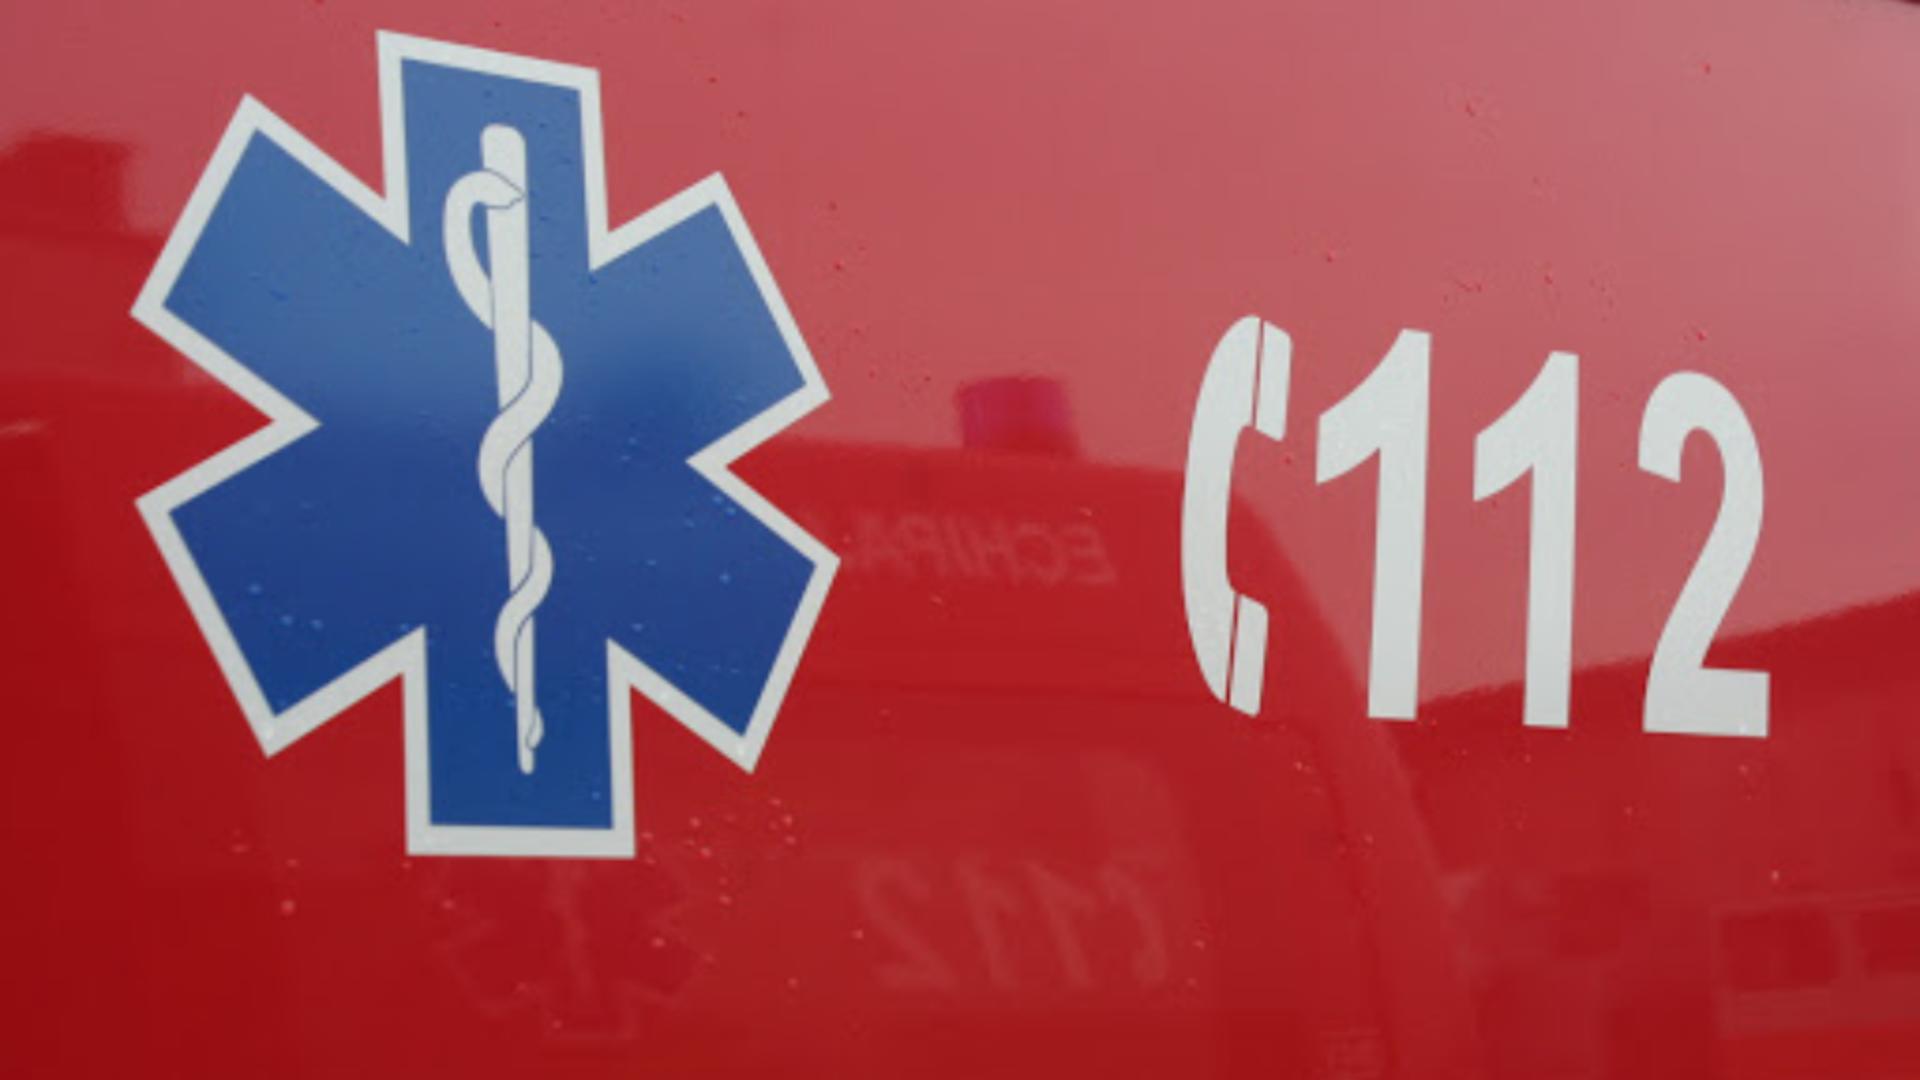 Intervenție ambulanță - imagine de arhivă